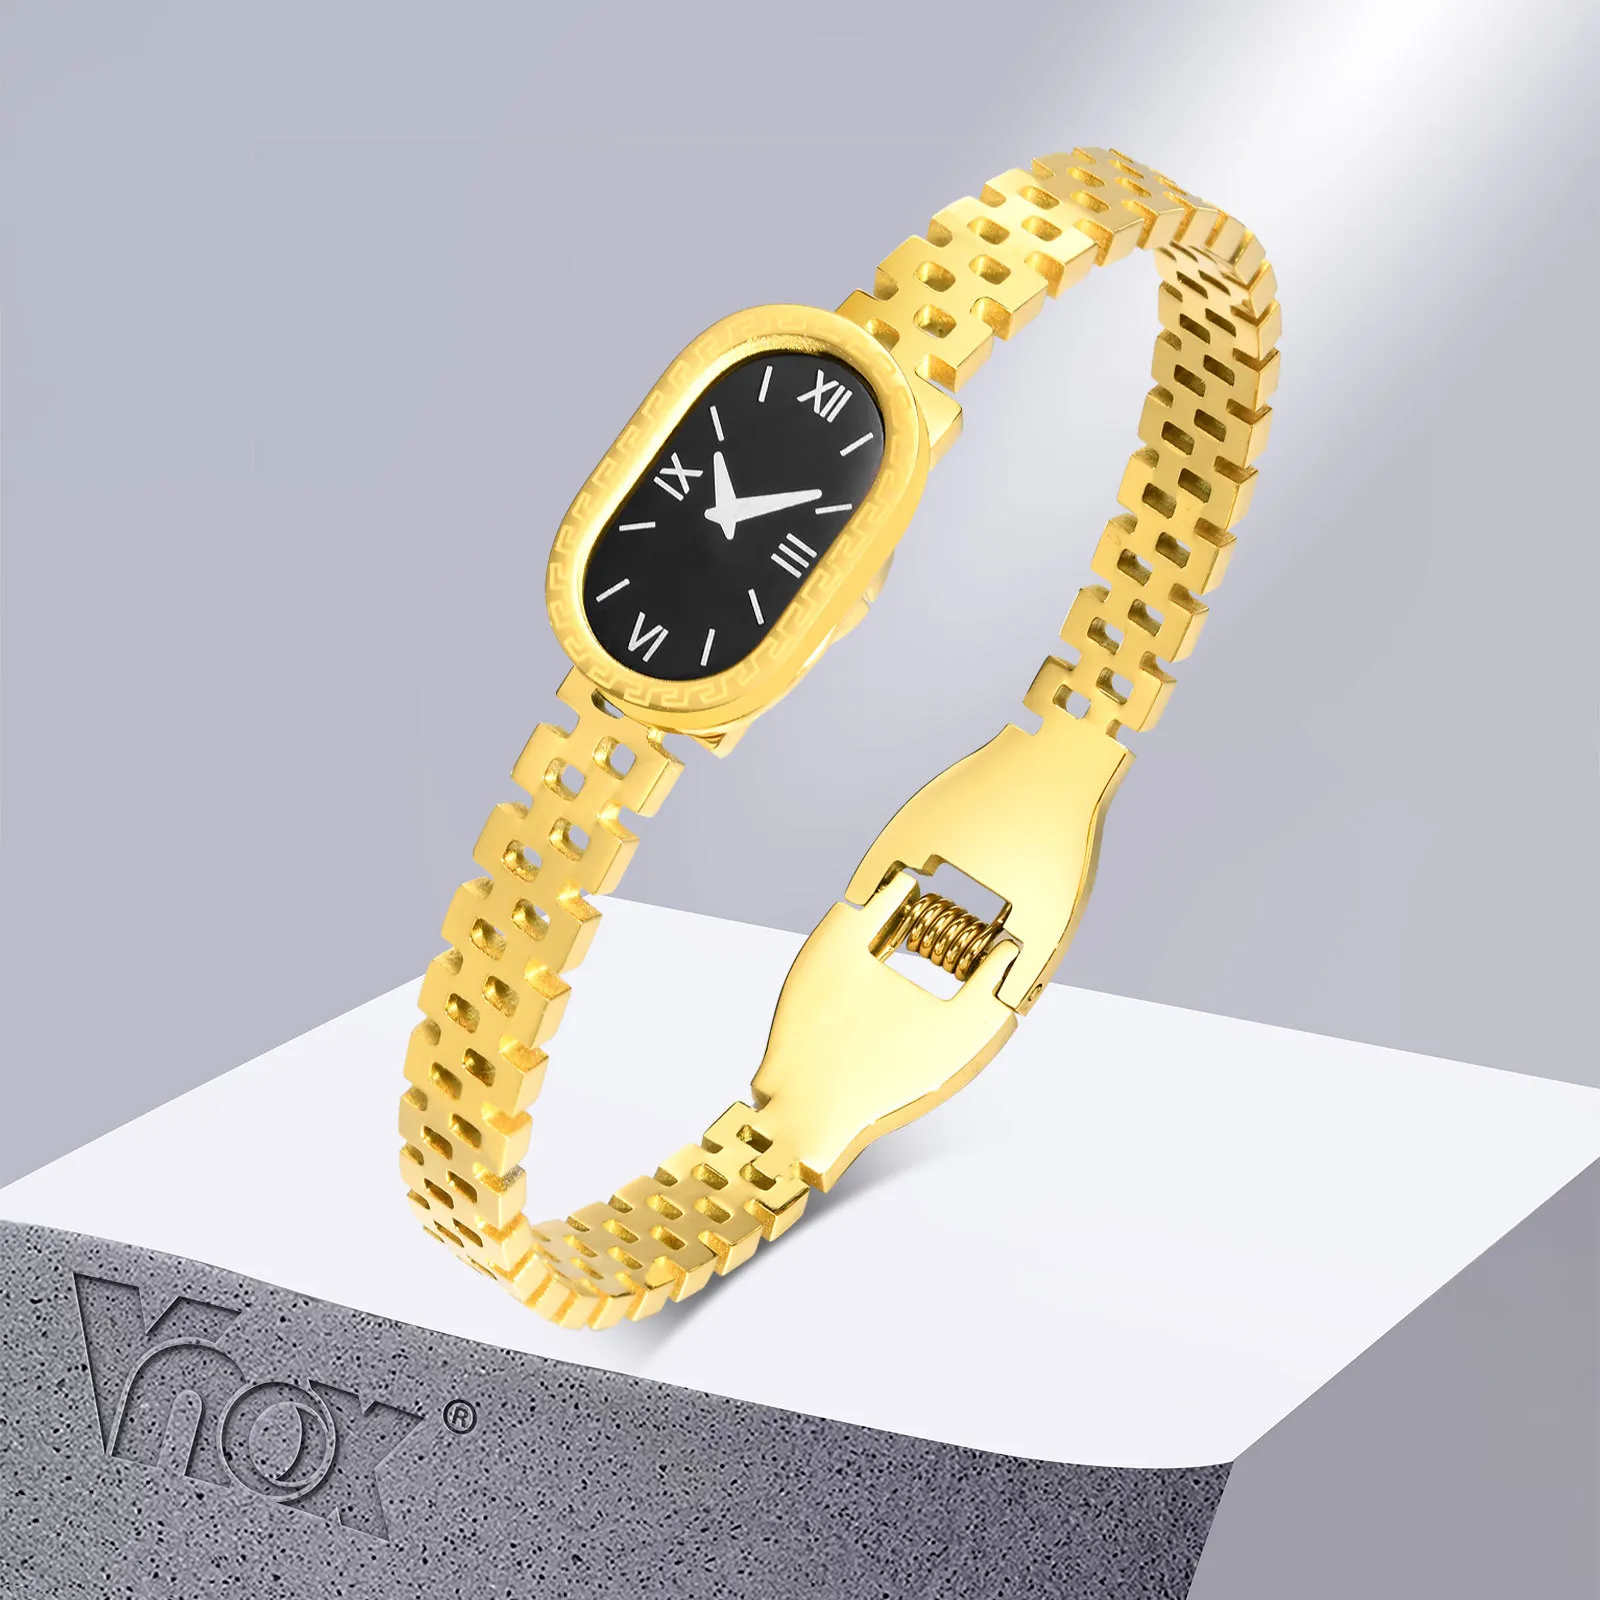 Vnox-brazalete en forma de reloj para mujer, pulsera elegante de acero inoxidable, Color dorado